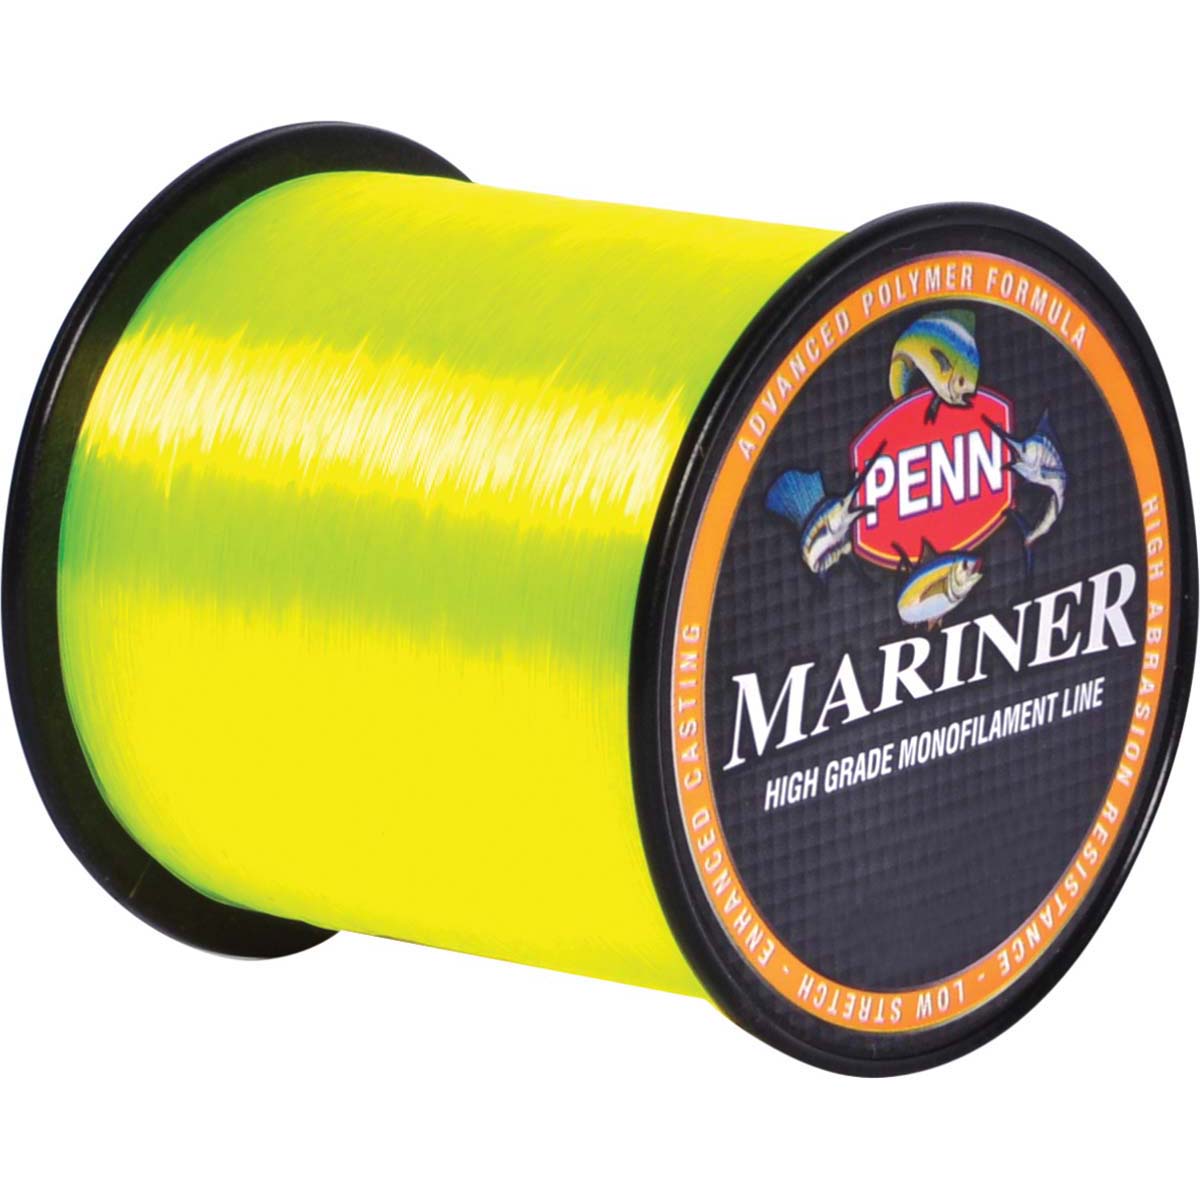 Penn Mariner Mono Line 245m 6lb 6lb